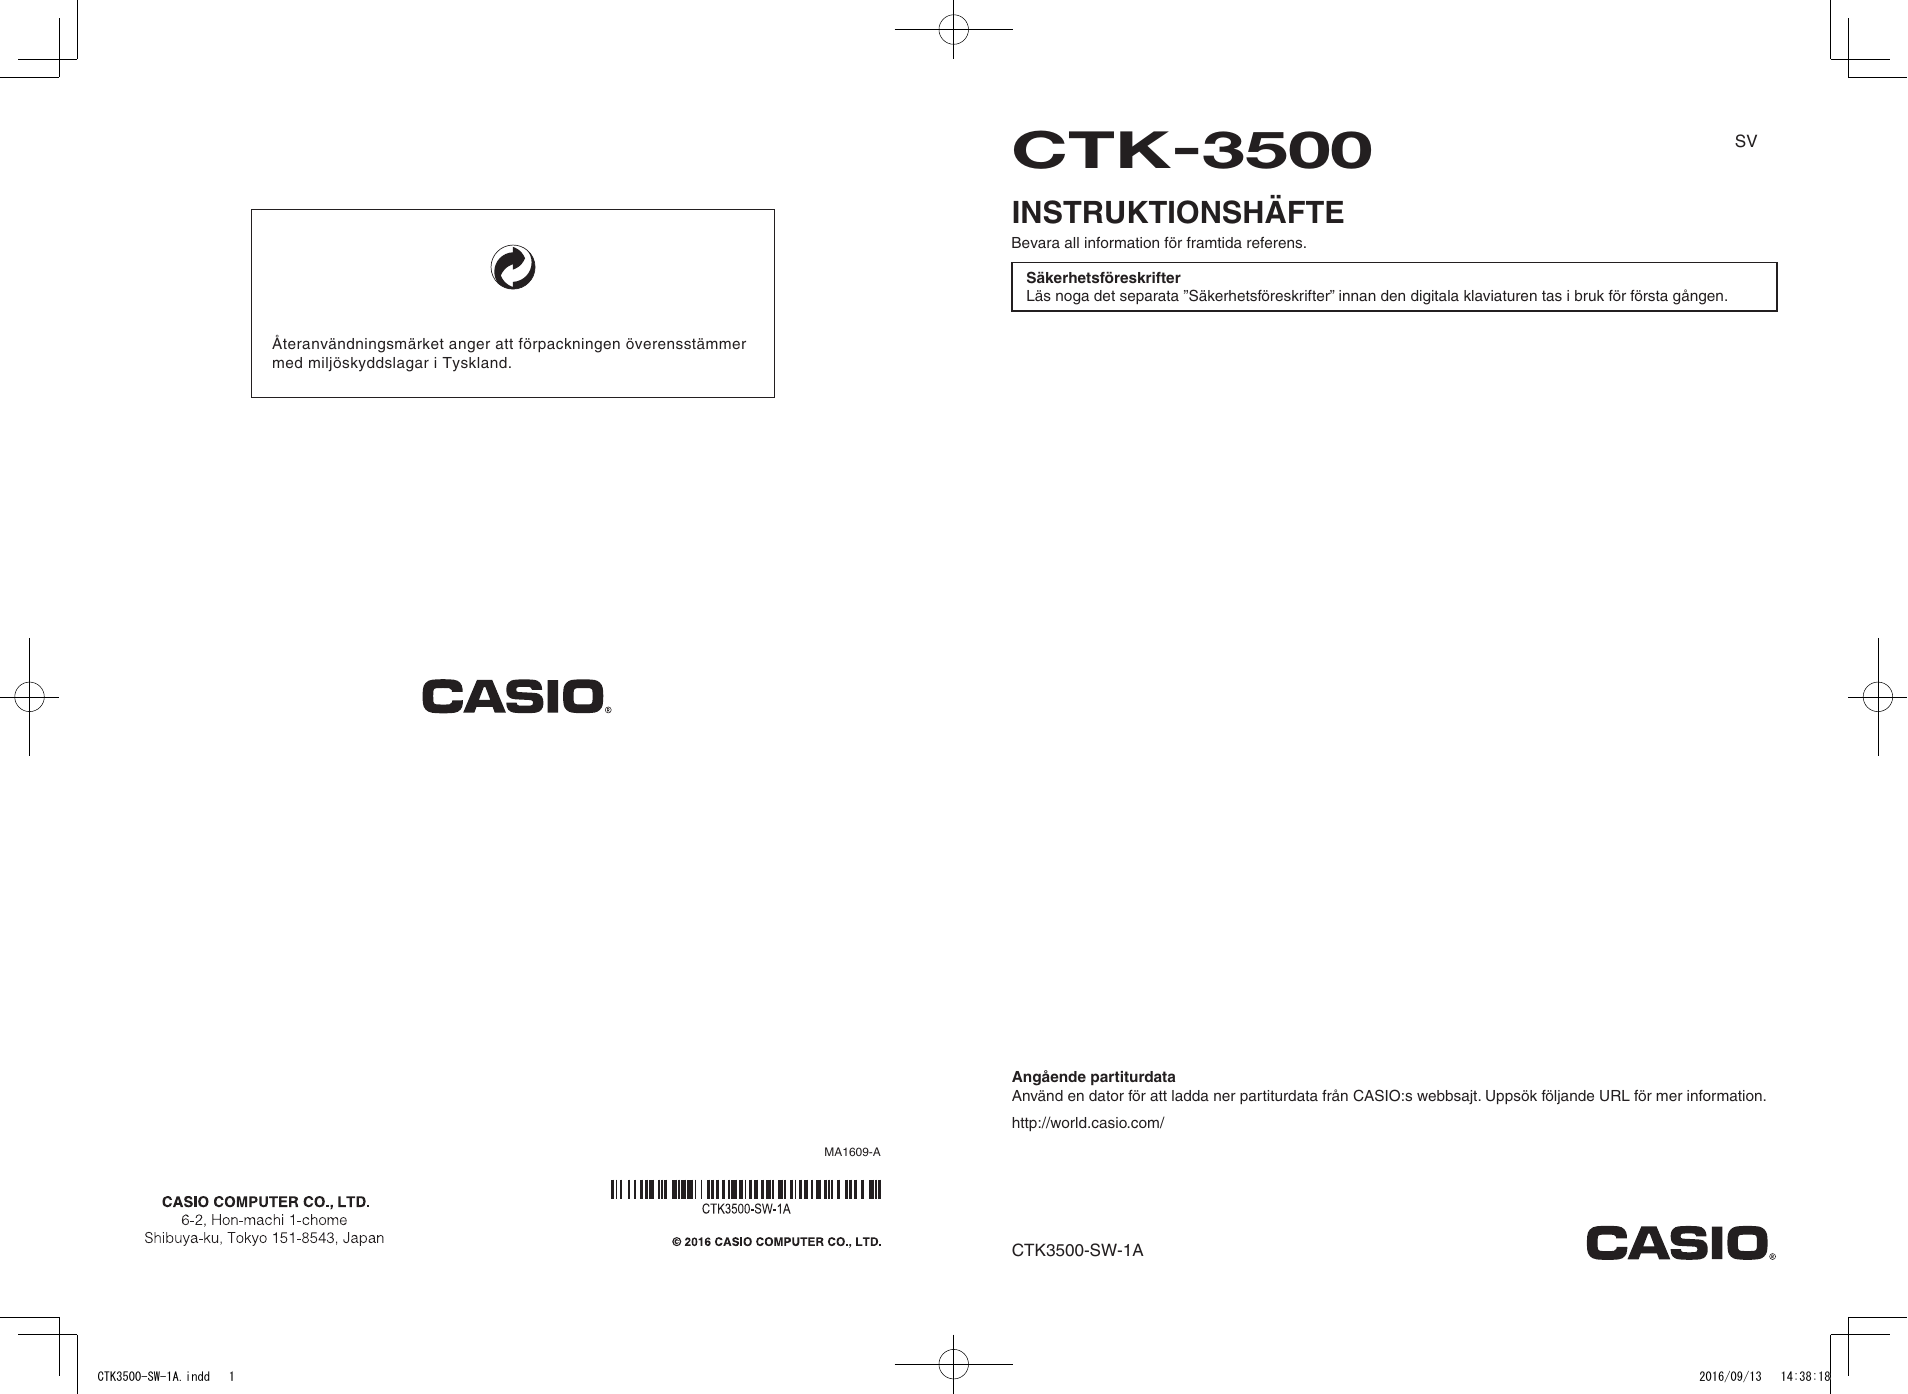 Casio CTK-3500 User manual | Manualzz